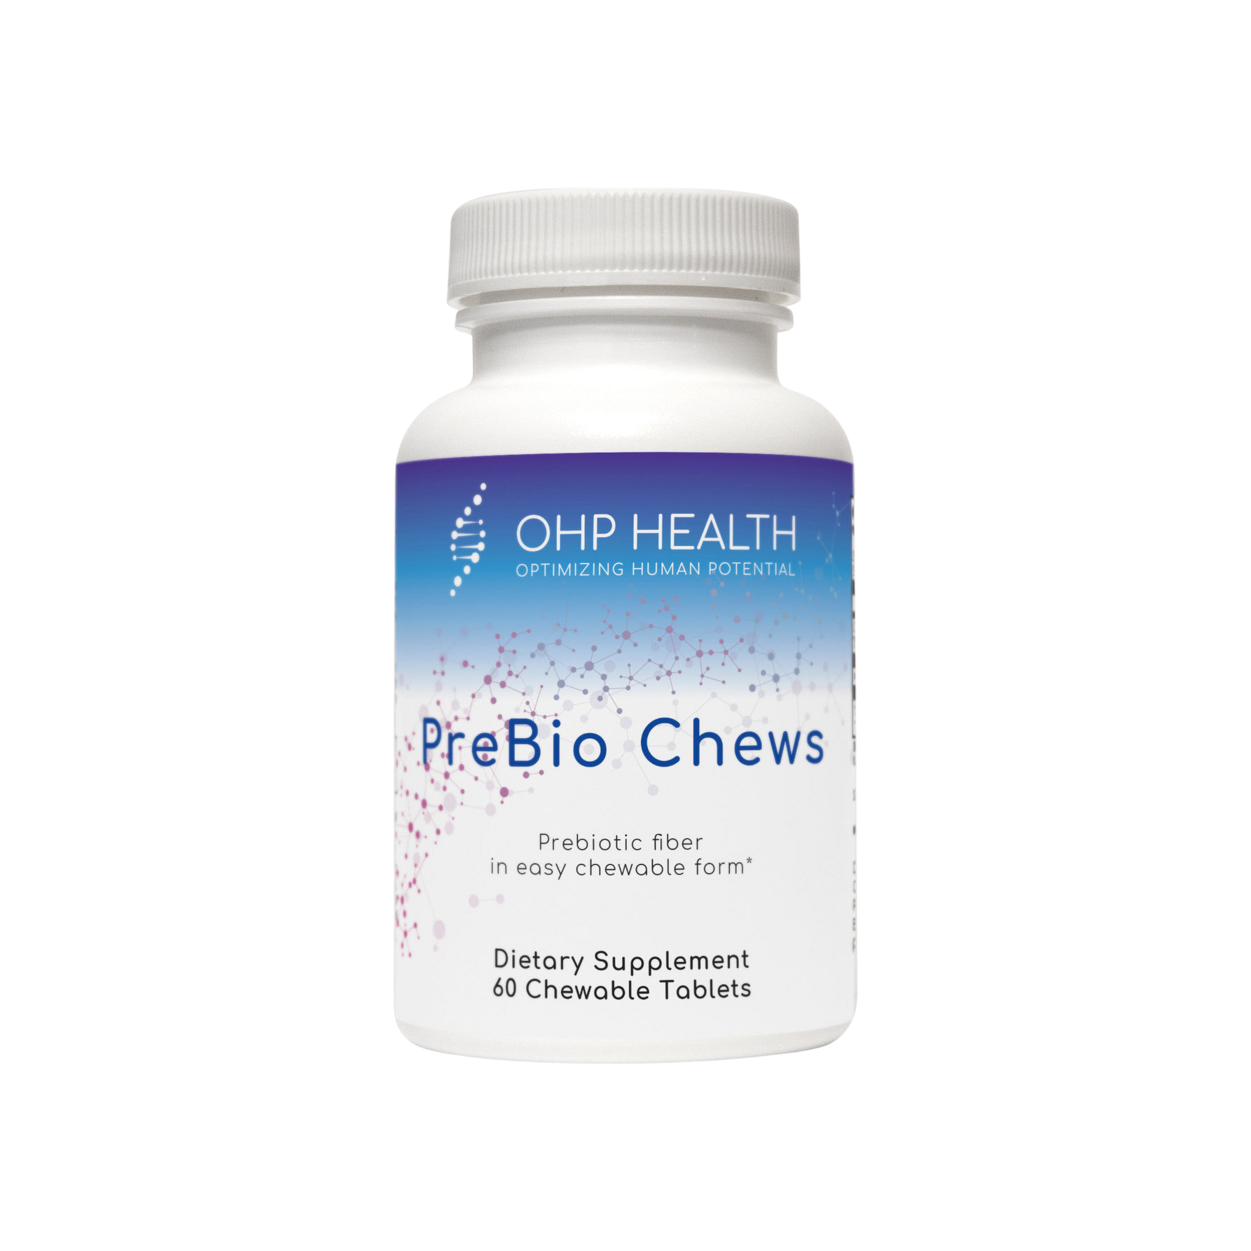 PreBio Chews by OHP Health.